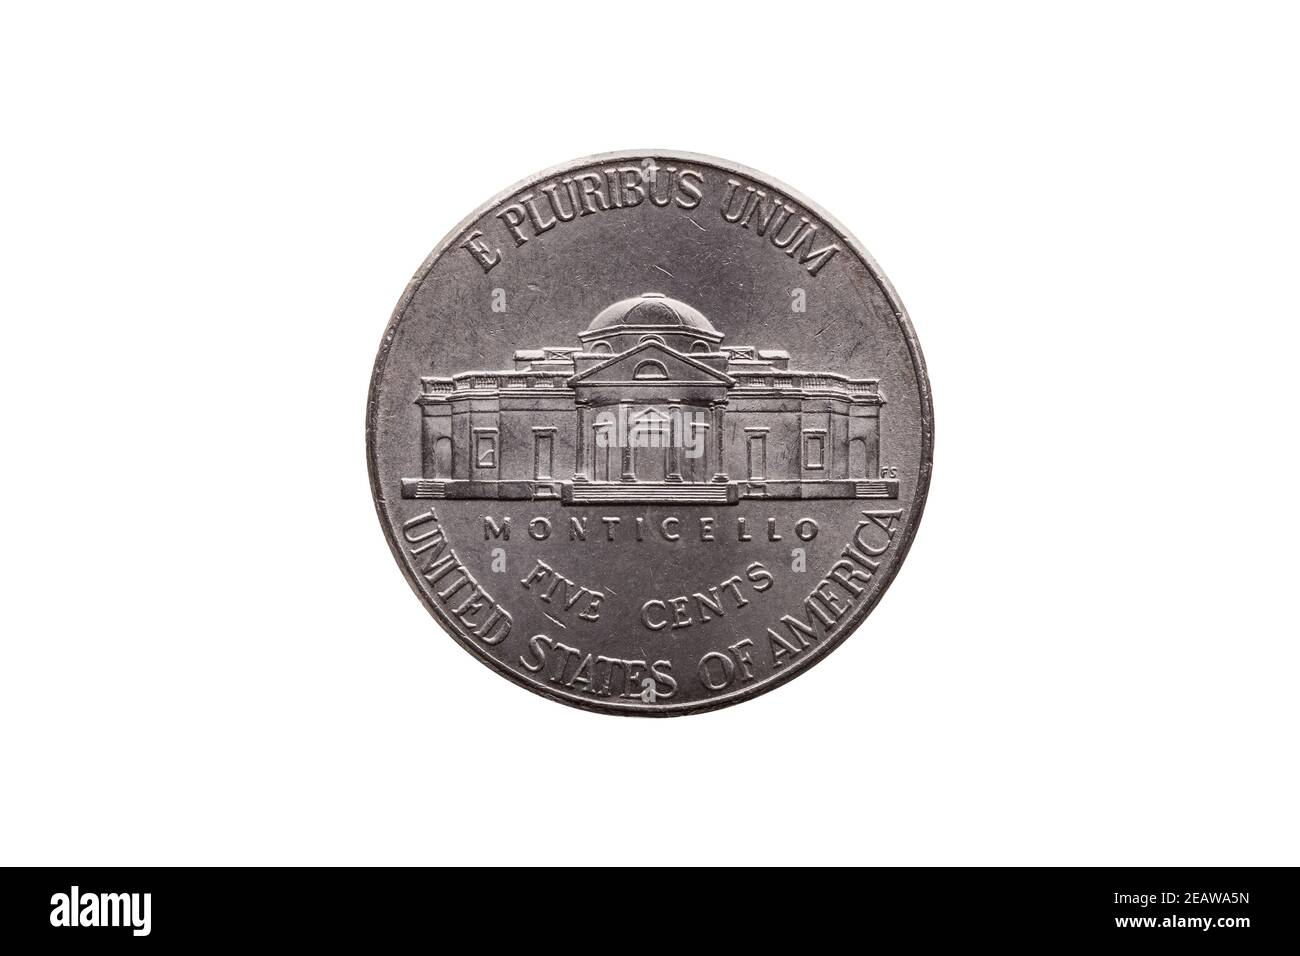 USA Halbdime-Nickelmünze (25 Cent) Rückseite zeigt Monticello ausgeschnitten und isoliert Stockfoto